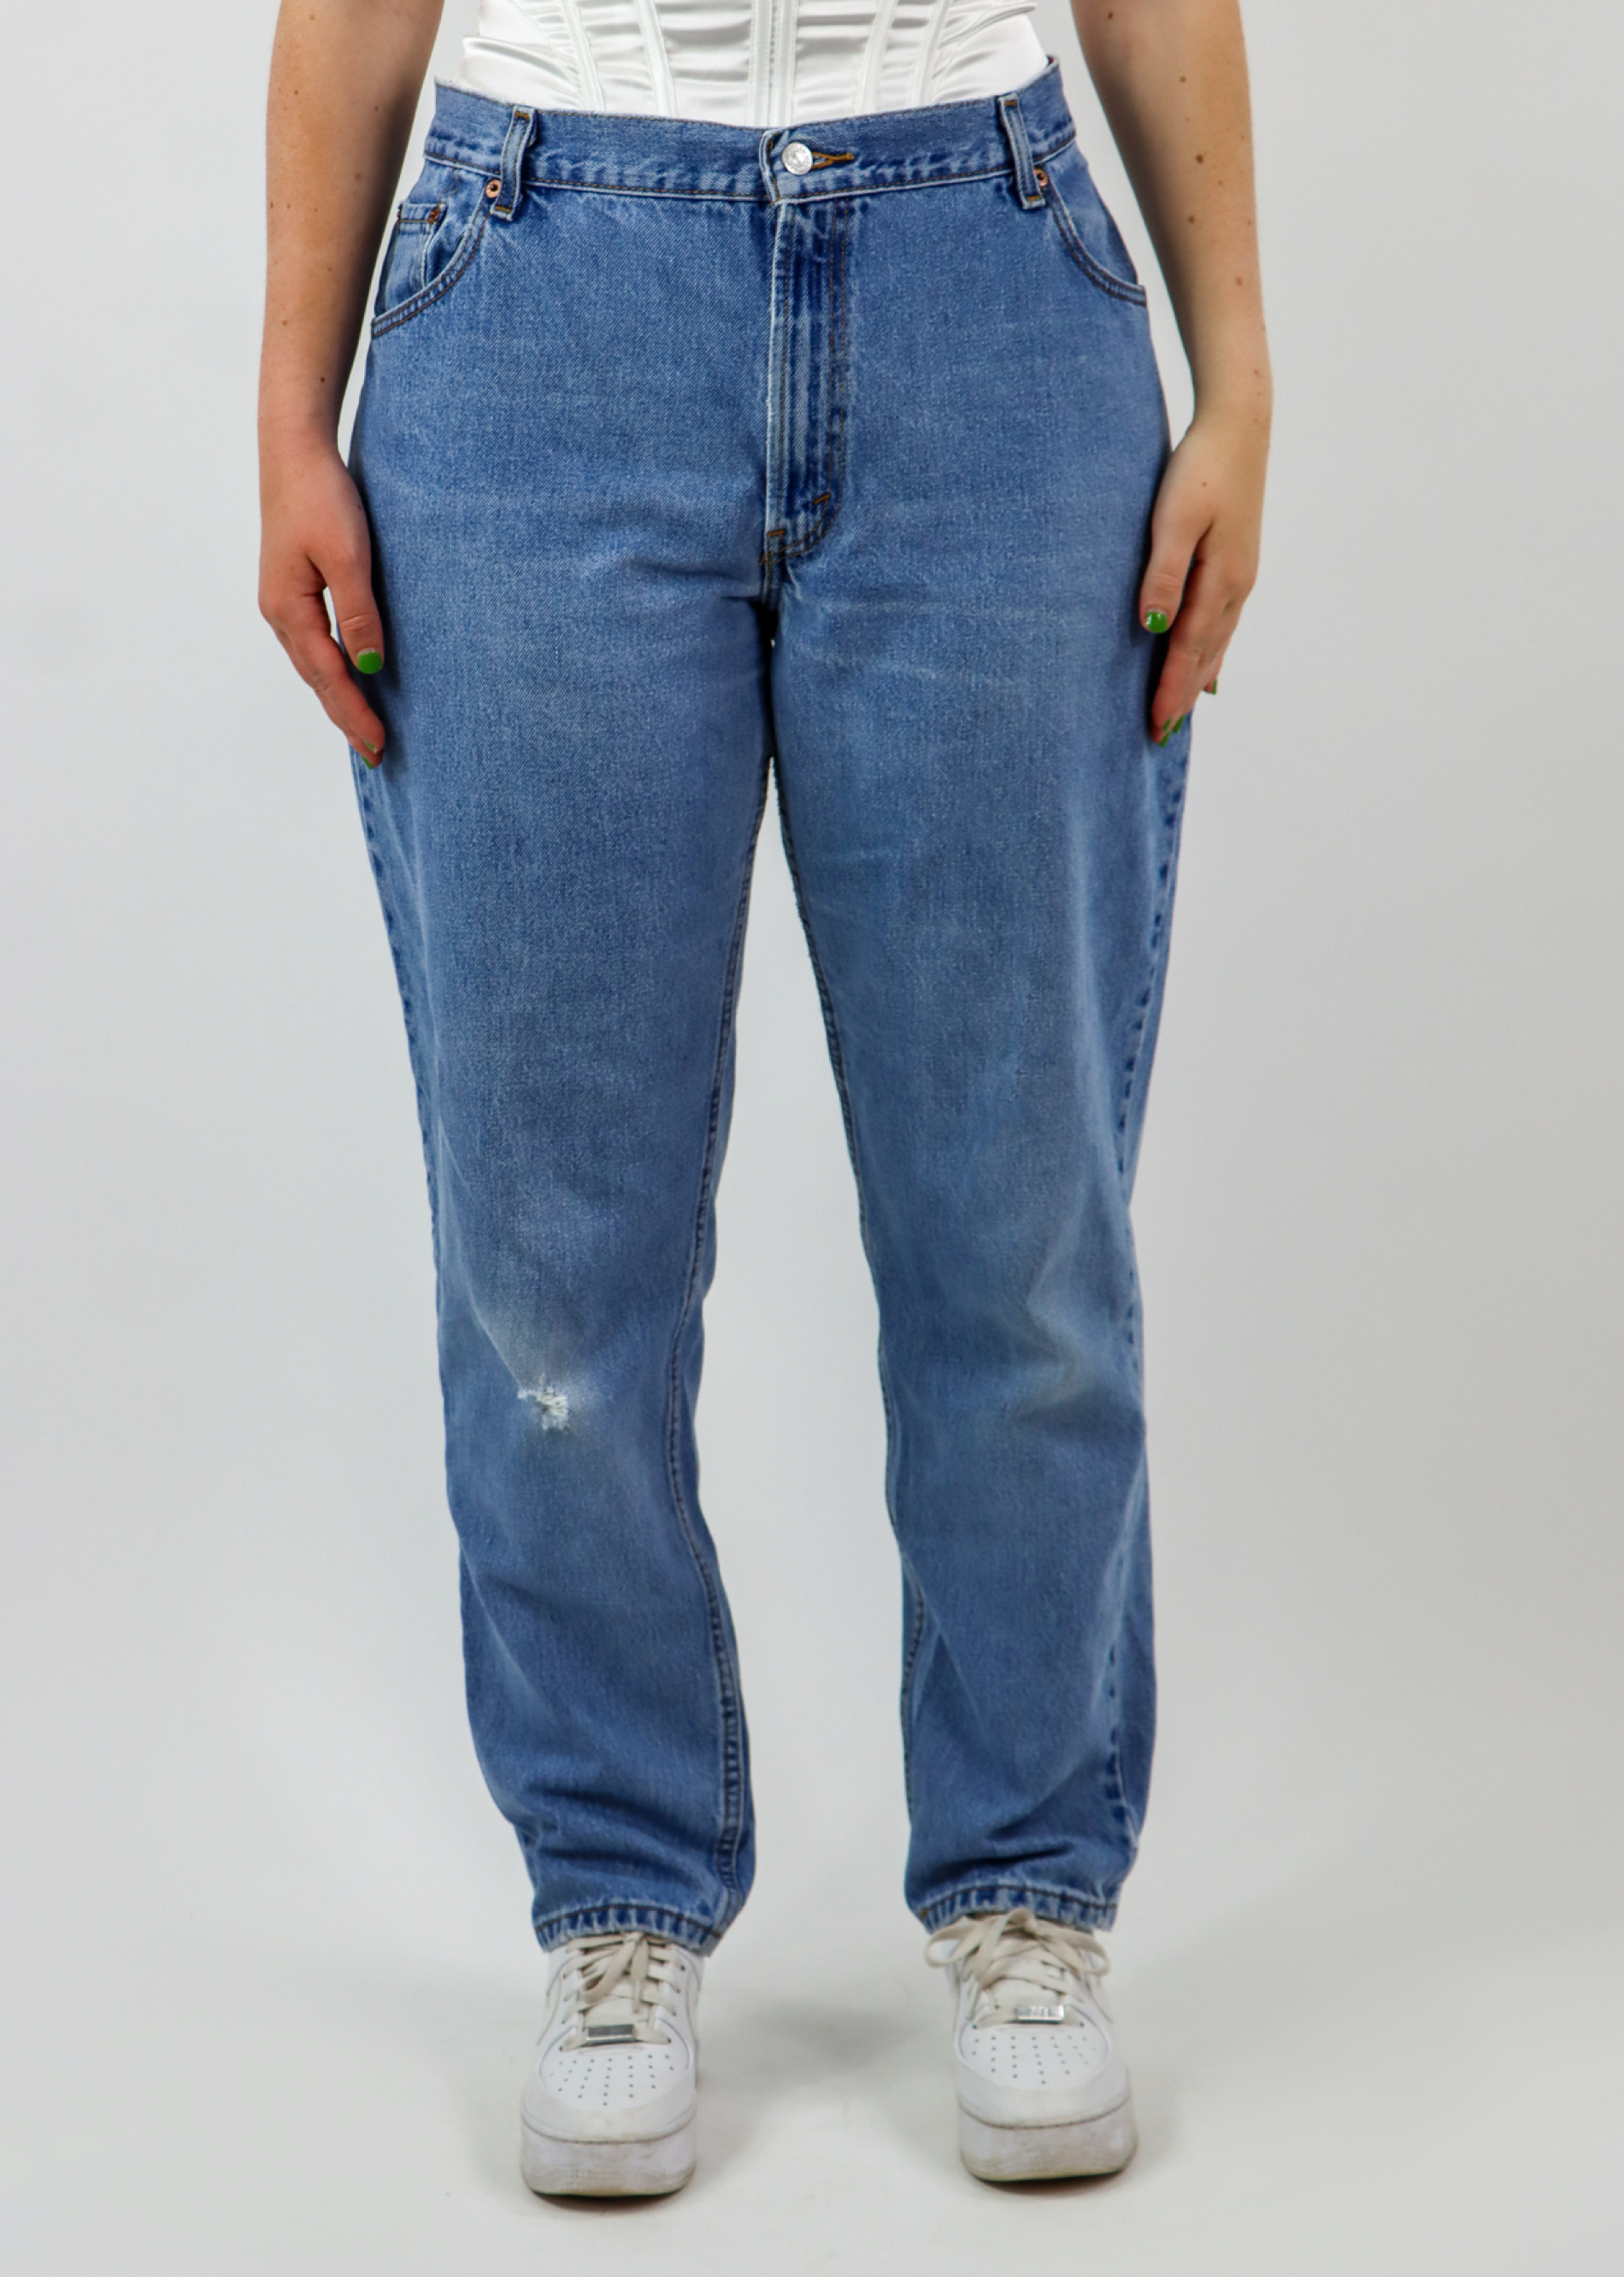 ubehag Ondartet maskulinitet Price Tag Vintage Levi Jeans ☆ Medium Wash – Rock N Rags